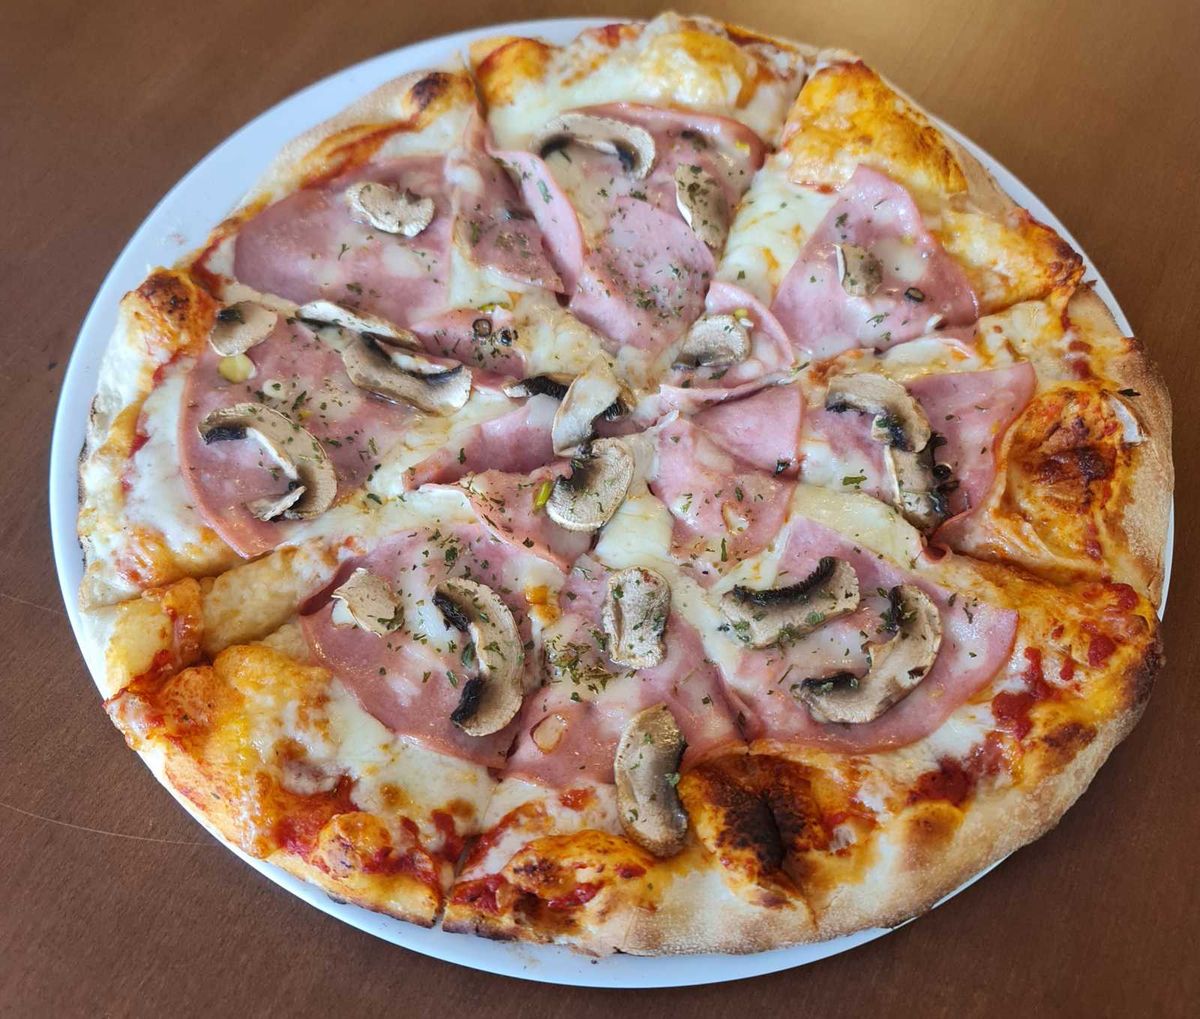 Pizza Funghi and Mortadella